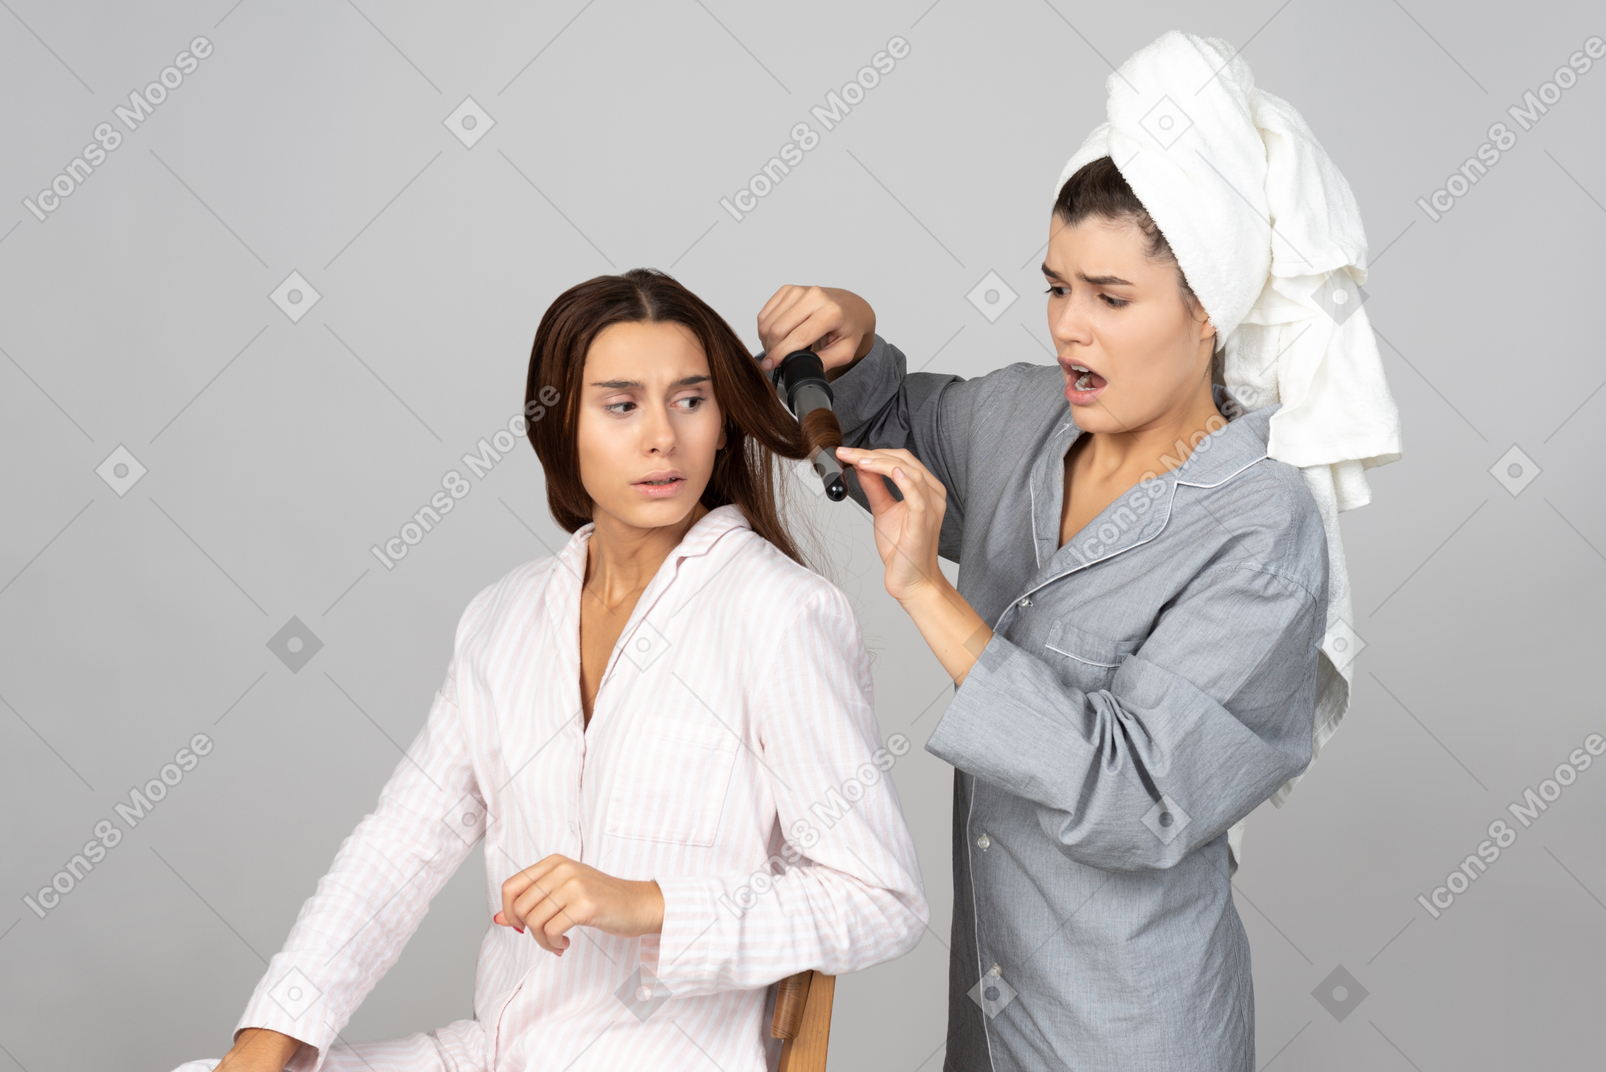 Mädchen frisiert die haare ihrer freundin mit eisen und sieht aus, als wäre etwas schief gelaufen